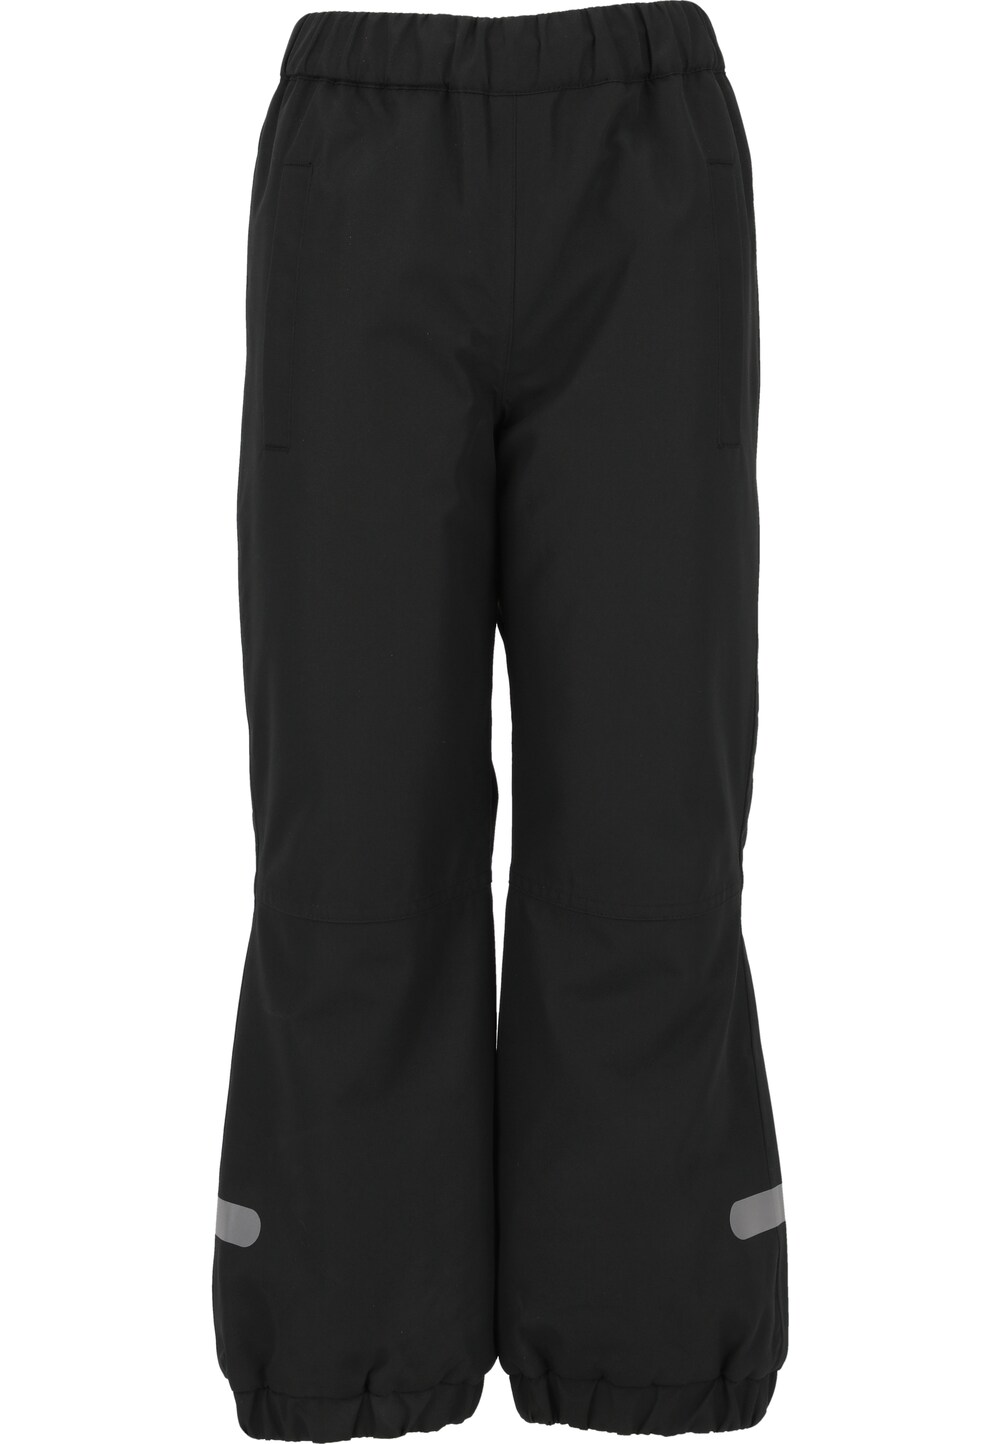 Обычные уличные брюки ZigZag Easy, черный обычные уличные брюки oakley crescent черный